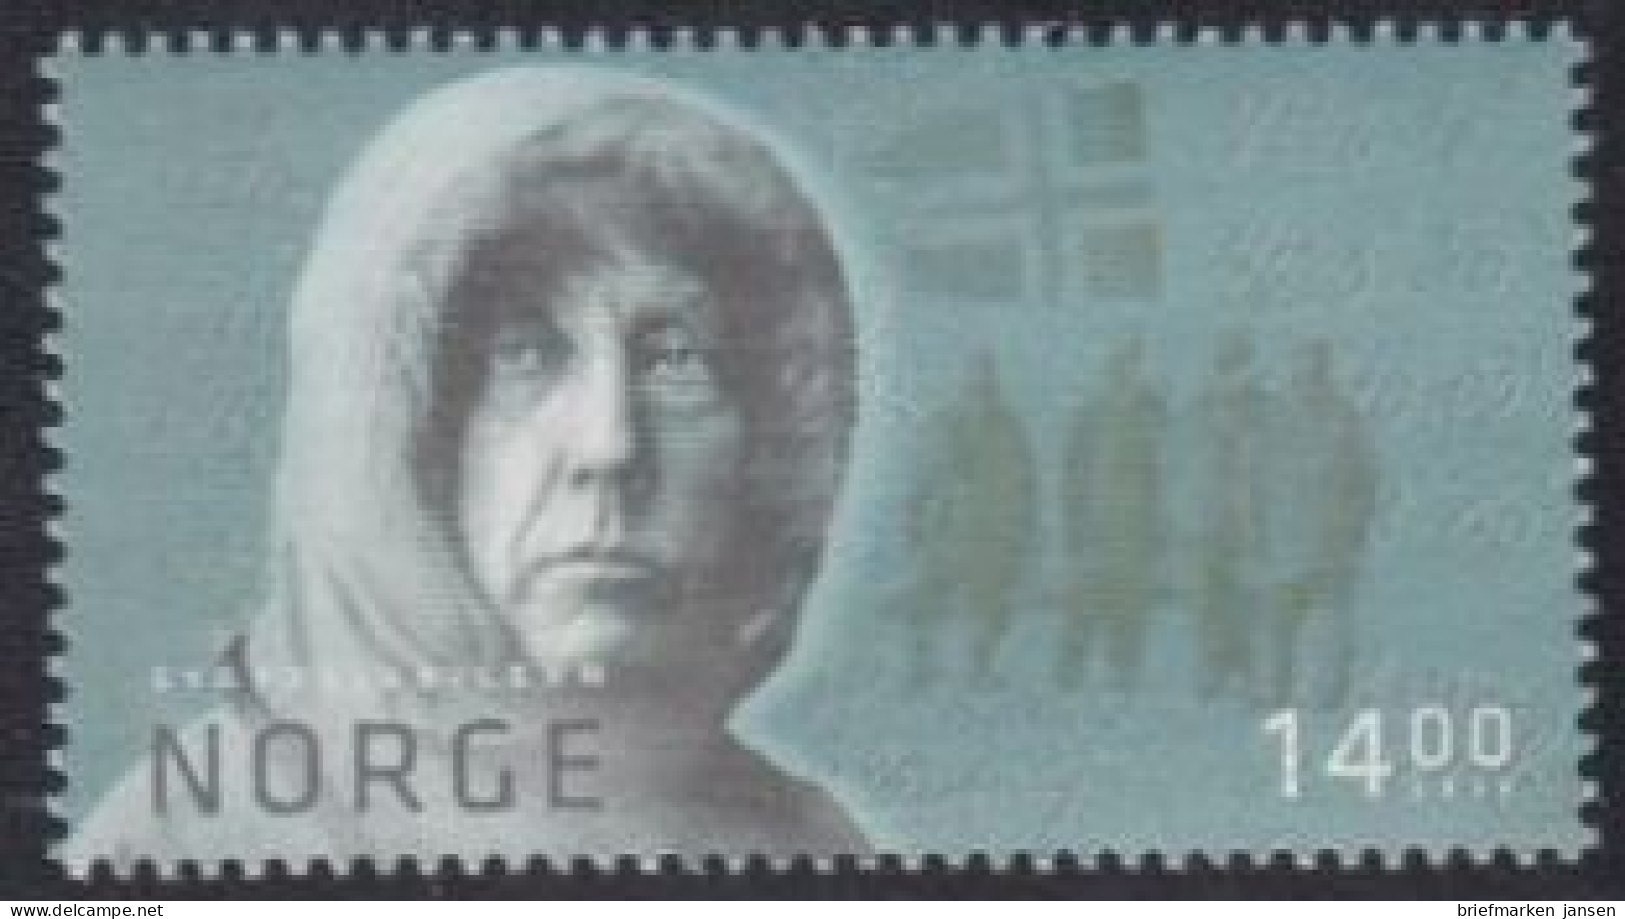 Norwegen Mi.Nr. 1750 100J.tag Südpol-Ersterreichung, Roald Amundsen (14,00) - Unused Stamps